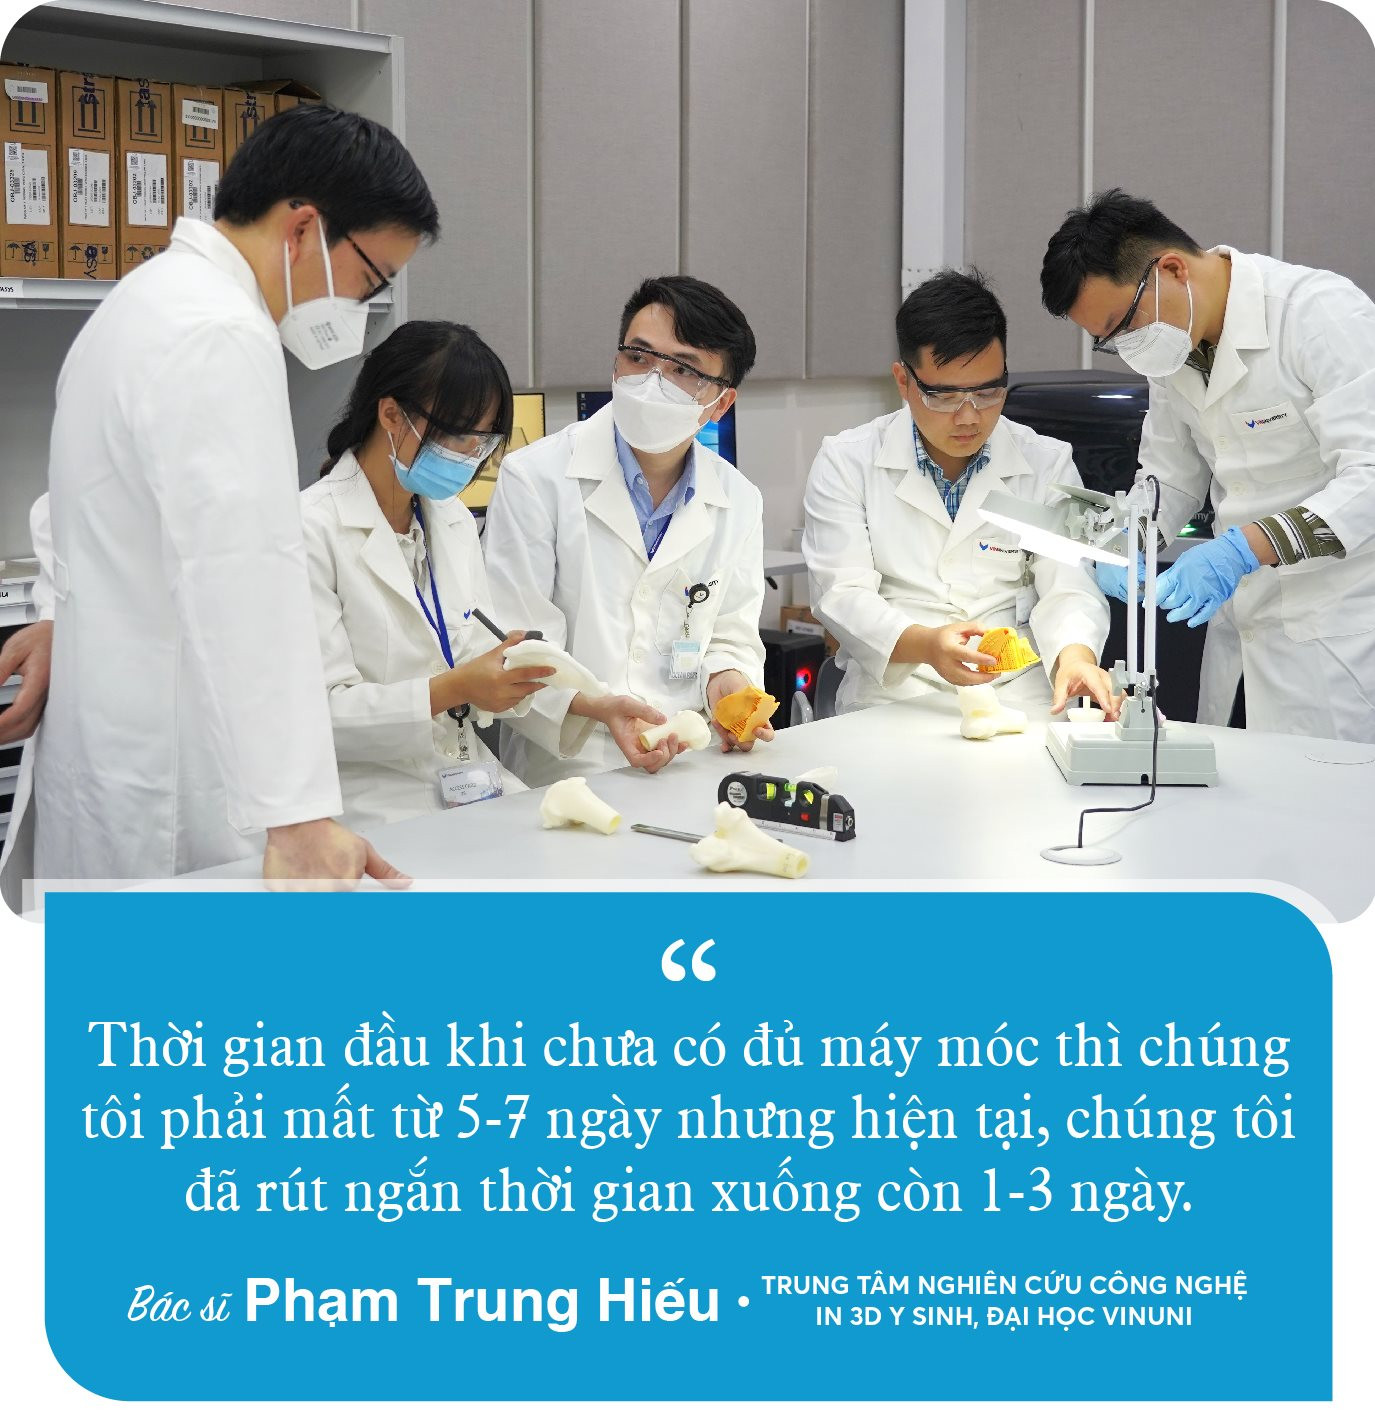 Phía sau công nghệ của VinUni giúp hiệu quả phẫu thuật xương ngang với các nước châu Âu và phù hợp hoàn toàn với người Việt - Ảnh 4.